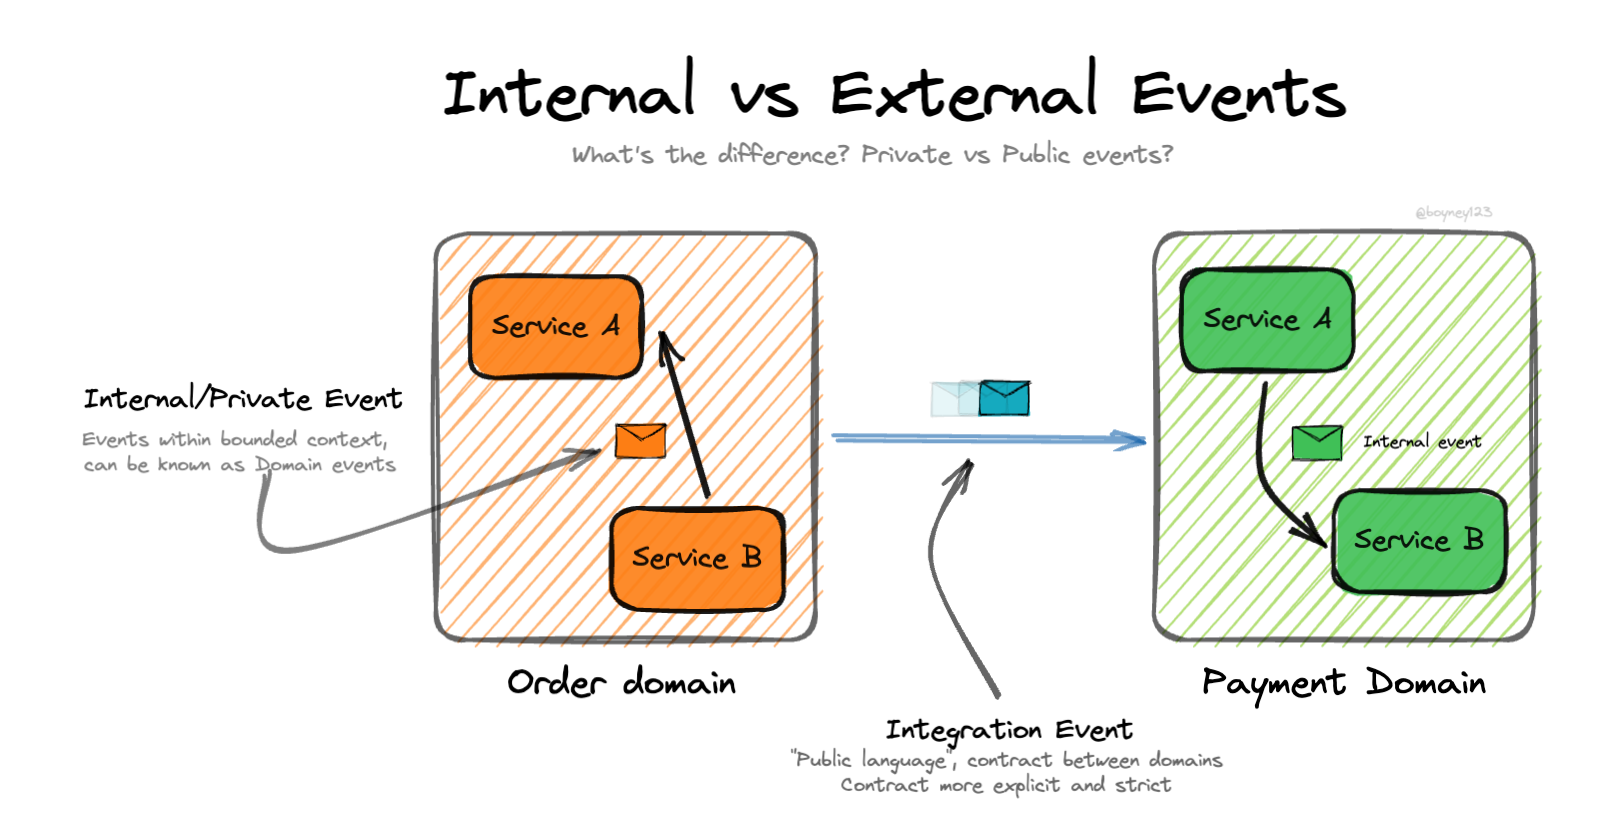 Internal vs External Events